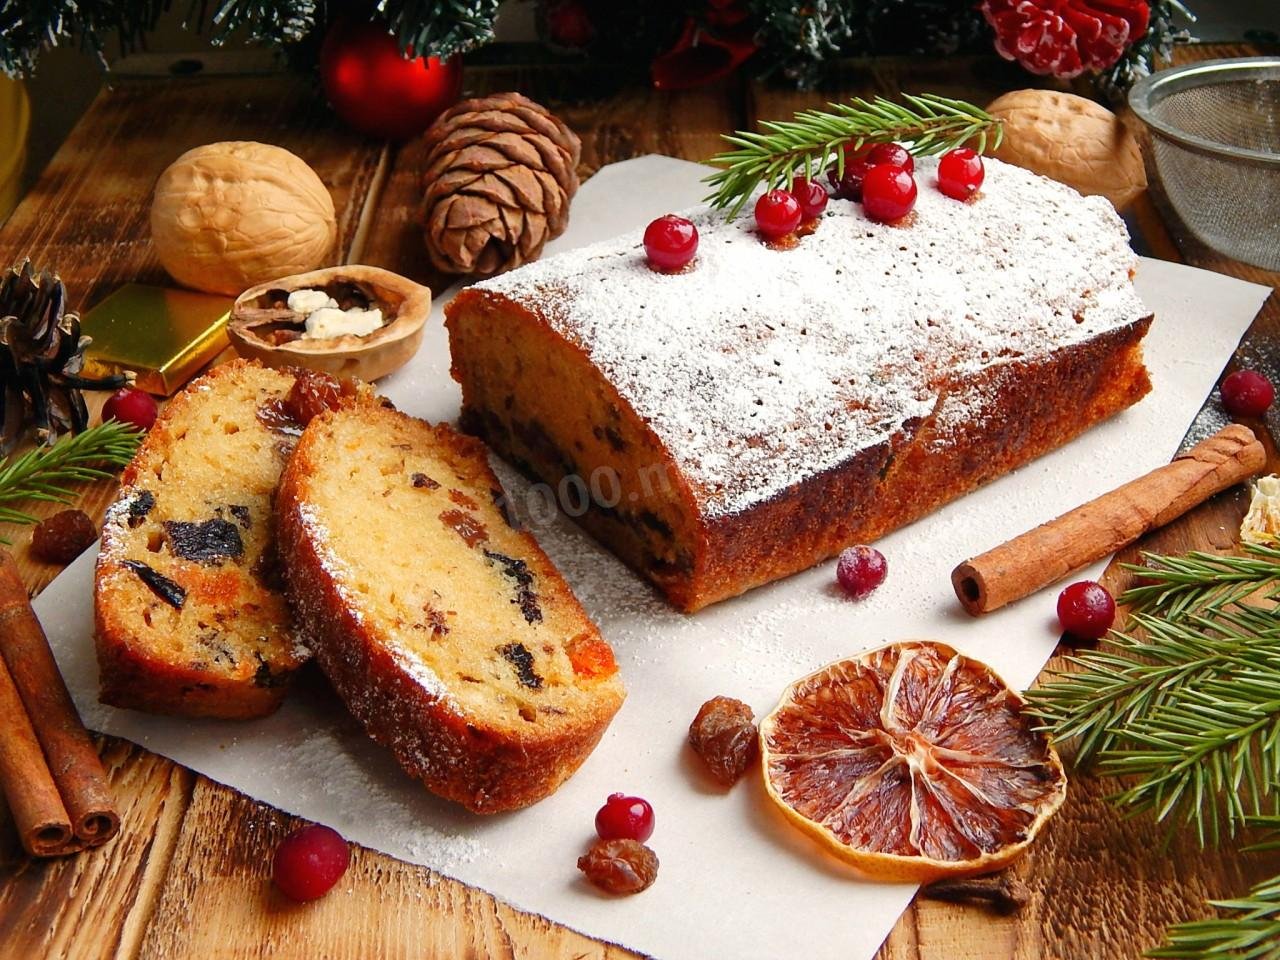 Как испечь вкусный английский рождественский кекс. рецепты имбирного, мандаринового, и ромового с сухофруктами рождественского кекса с фото, описанием и видео | inwomen